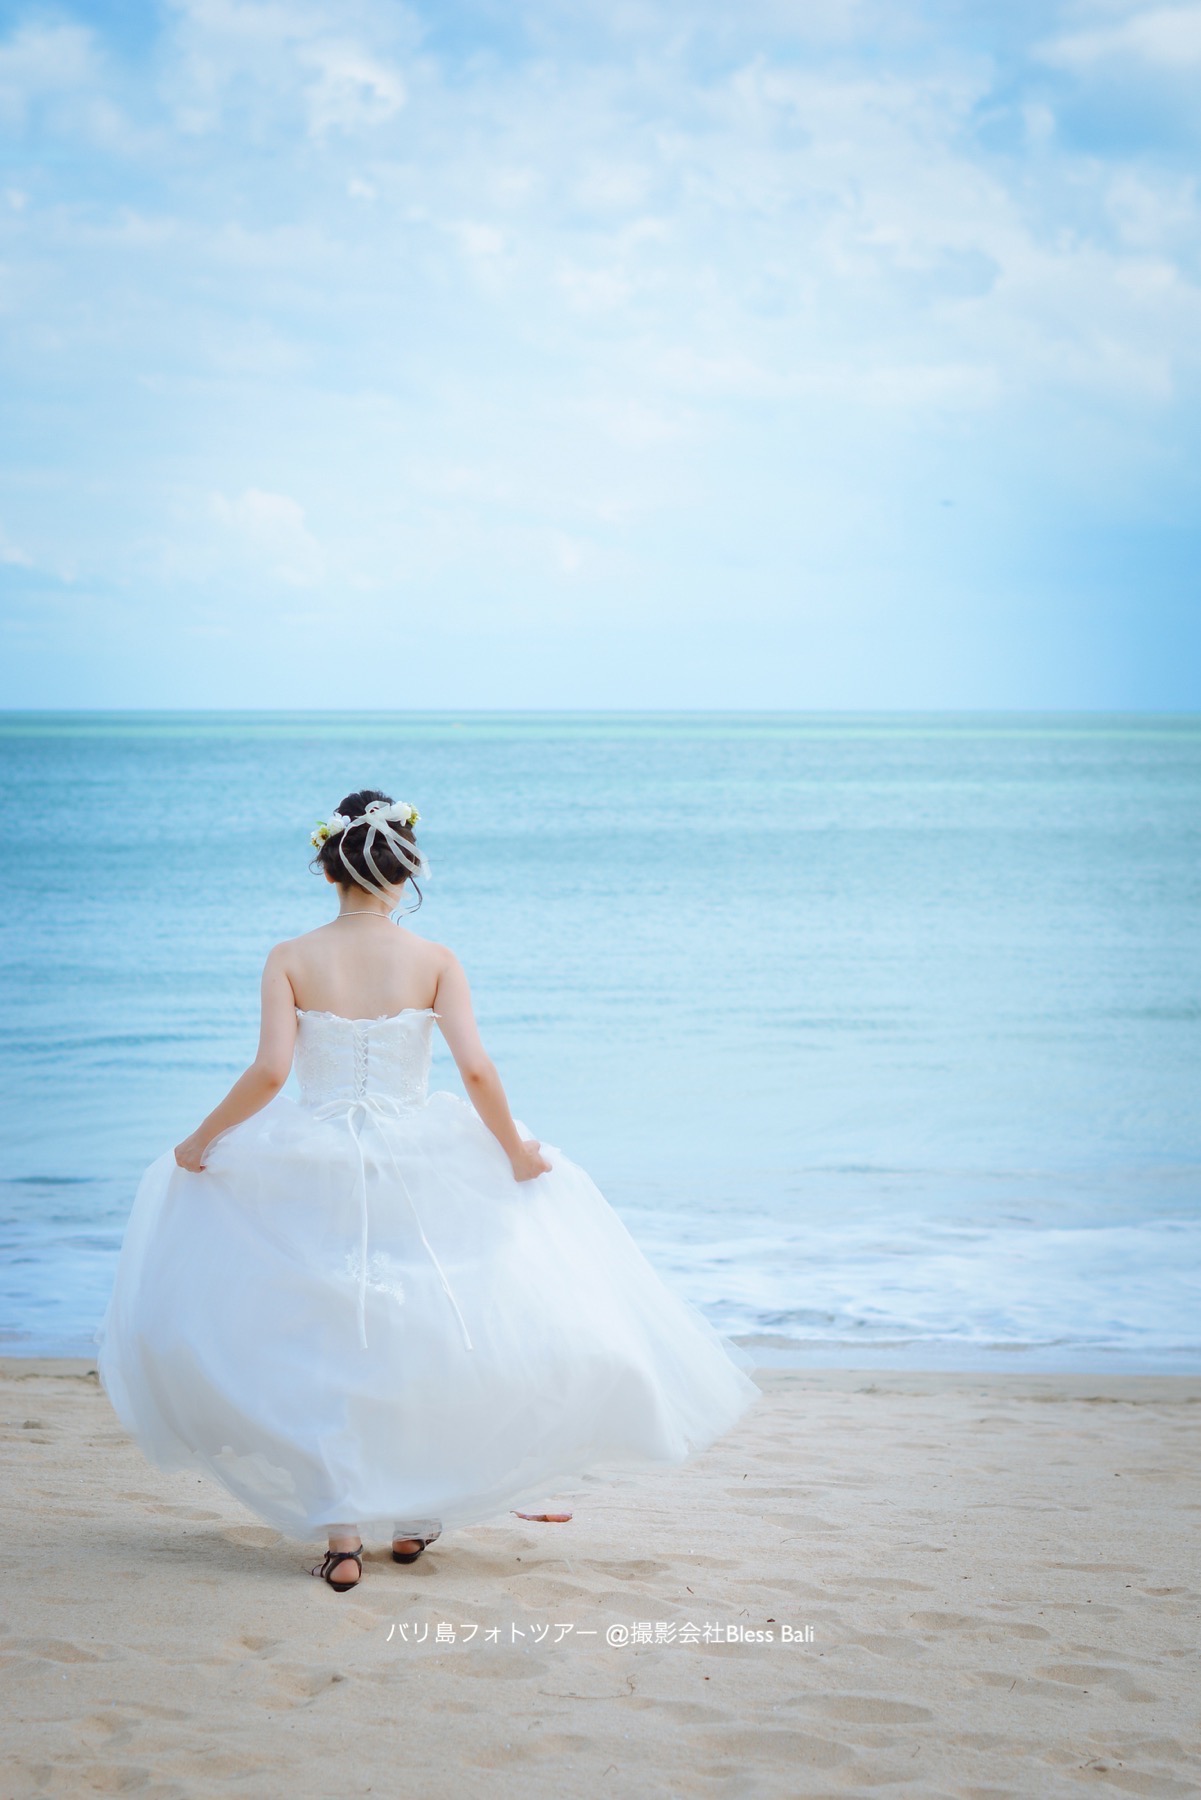 ドレスを持って海へと歩く花嫁様のソロショット